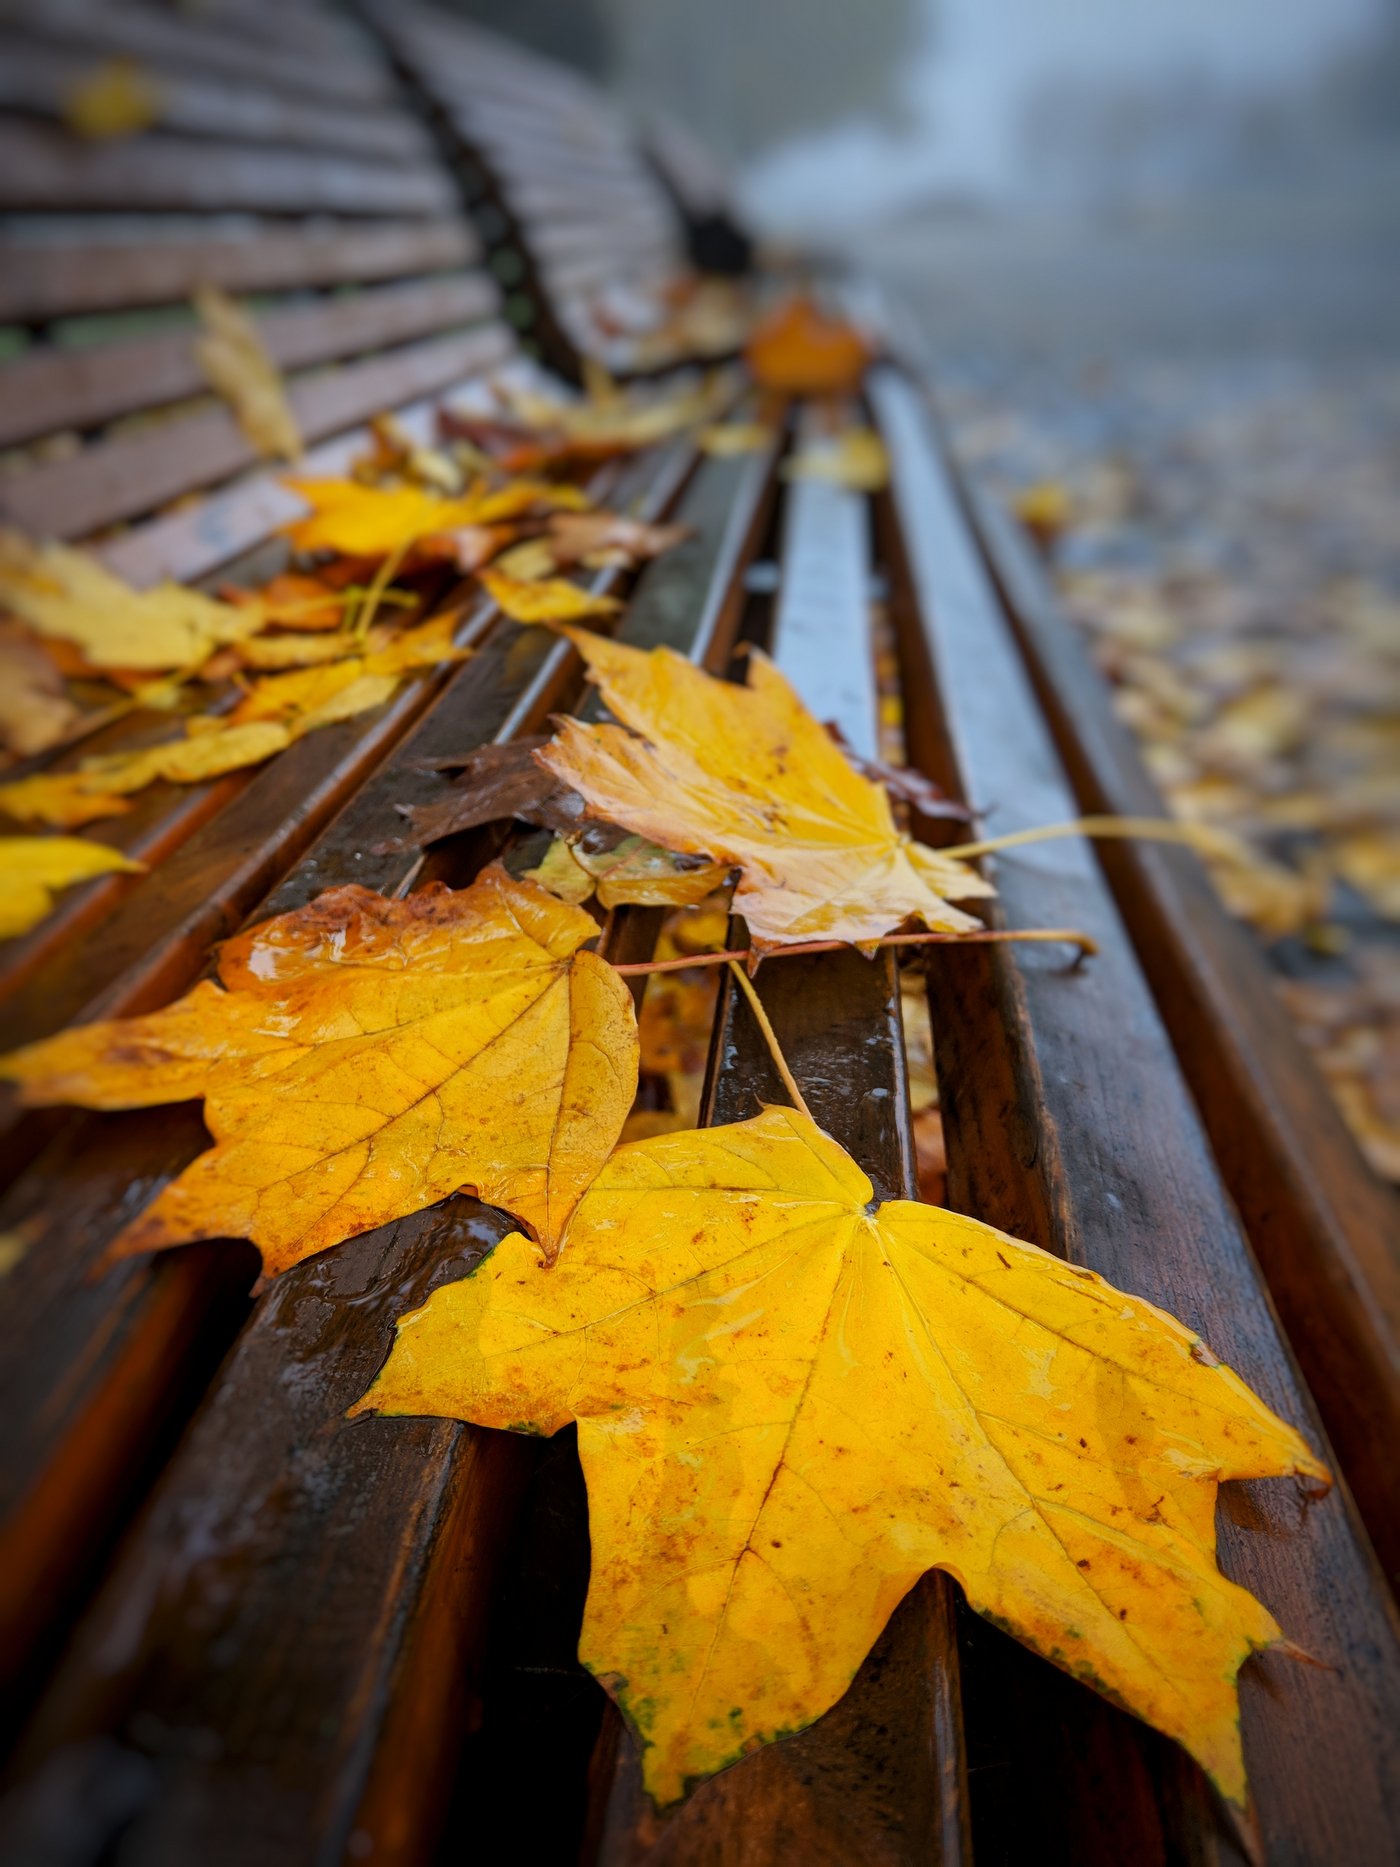 осень,листья,желтый,октябрь,осенний,туман,лавка,лавочка,перспектива,размытие,уличная фотография, Сергей Богачёв